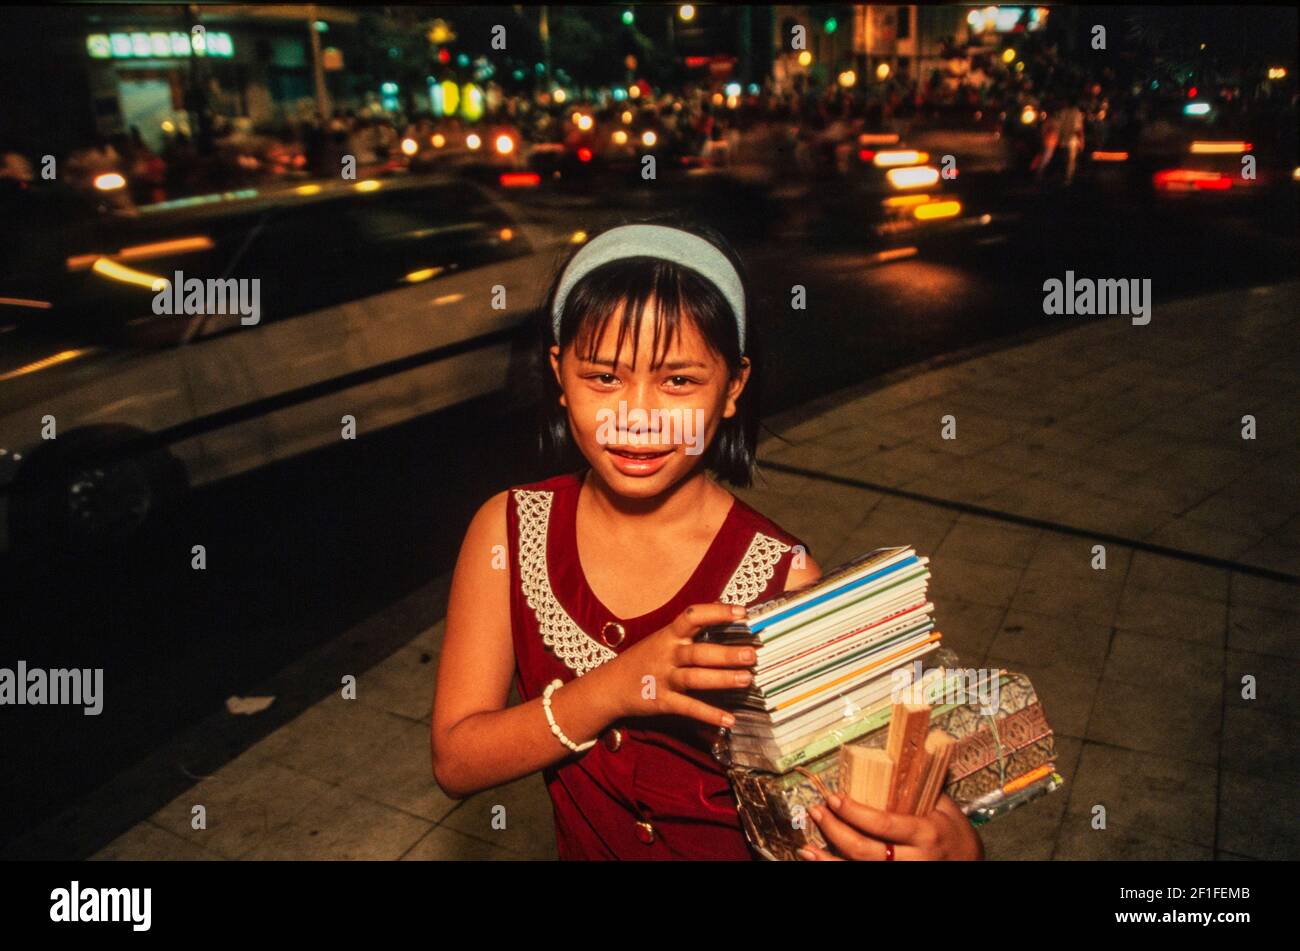 Una giovane ragazza che vende materiali turistici per strada, ho Chi Minh City, Vietnam, giugno 1980 Foto Stock